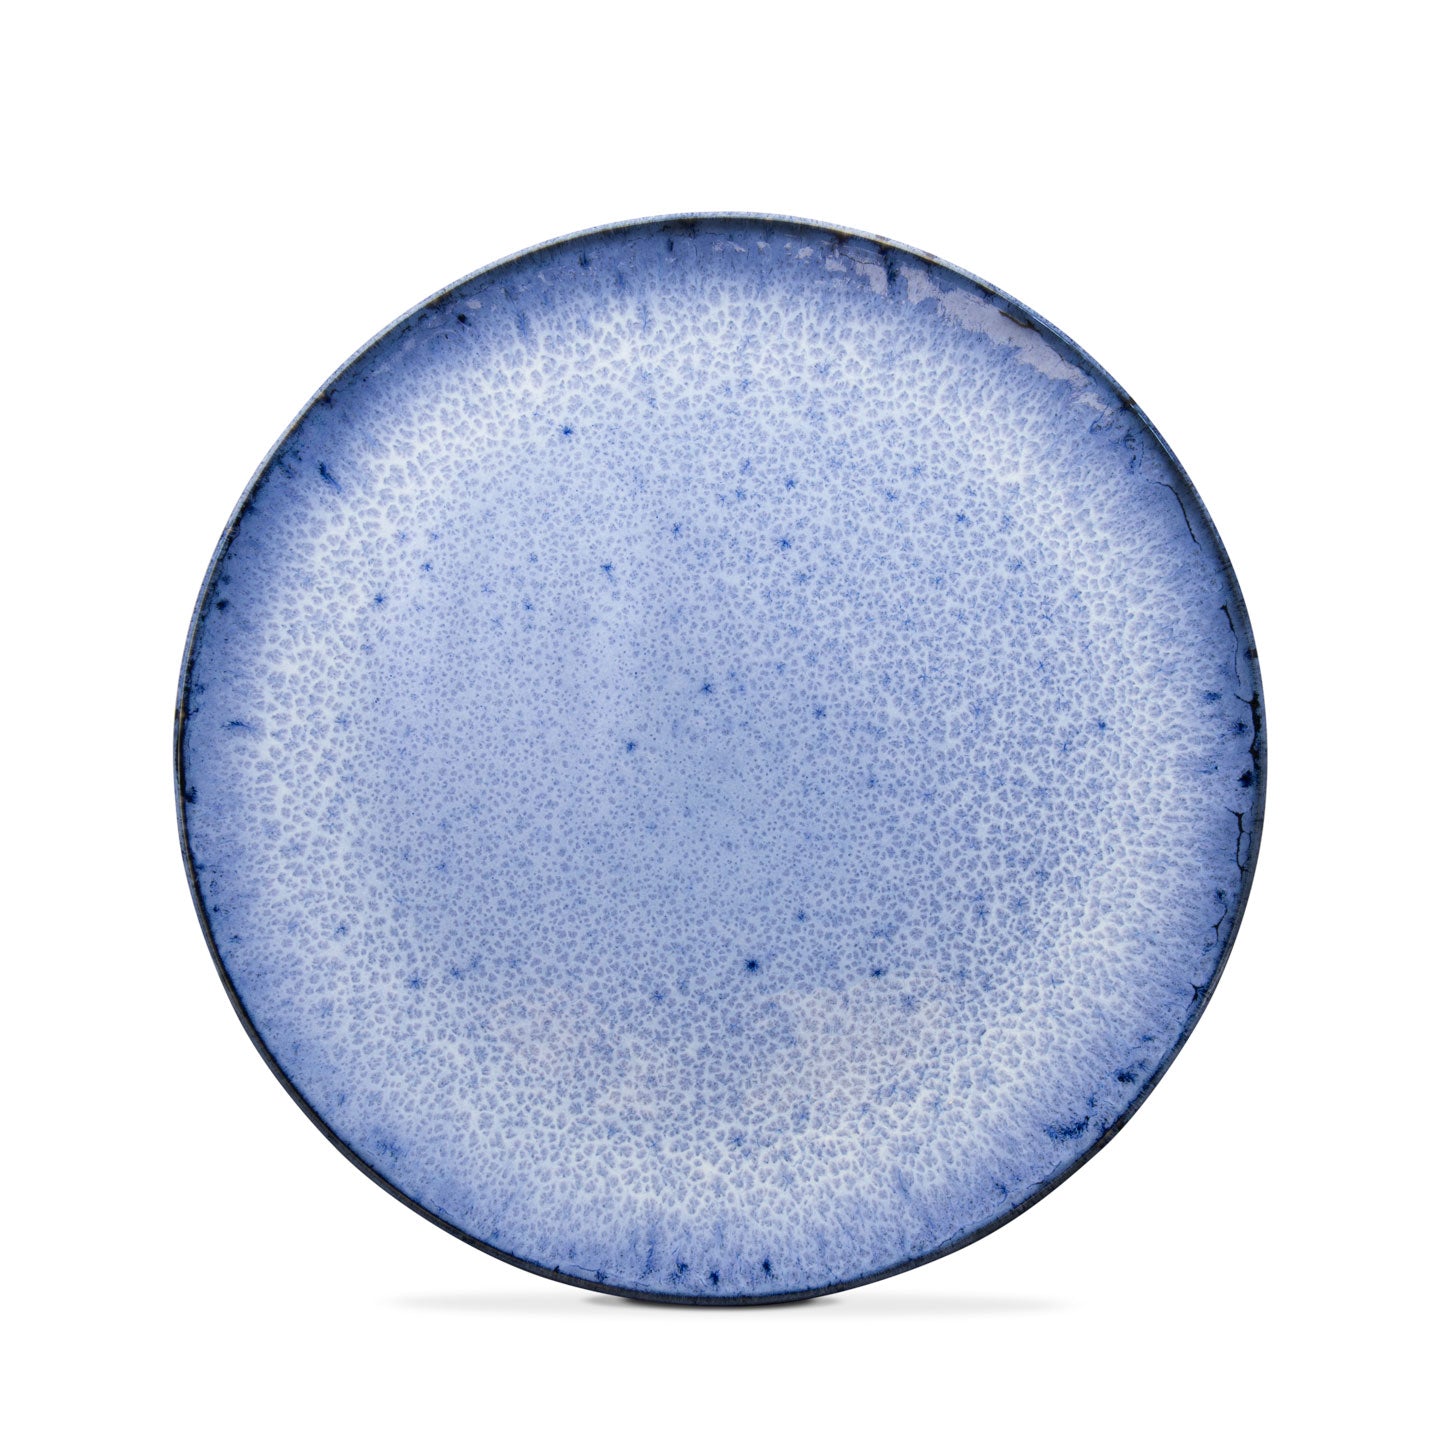 Blauer Speiseteller gross Keramik Geschirr Handgemacht aus Portugal